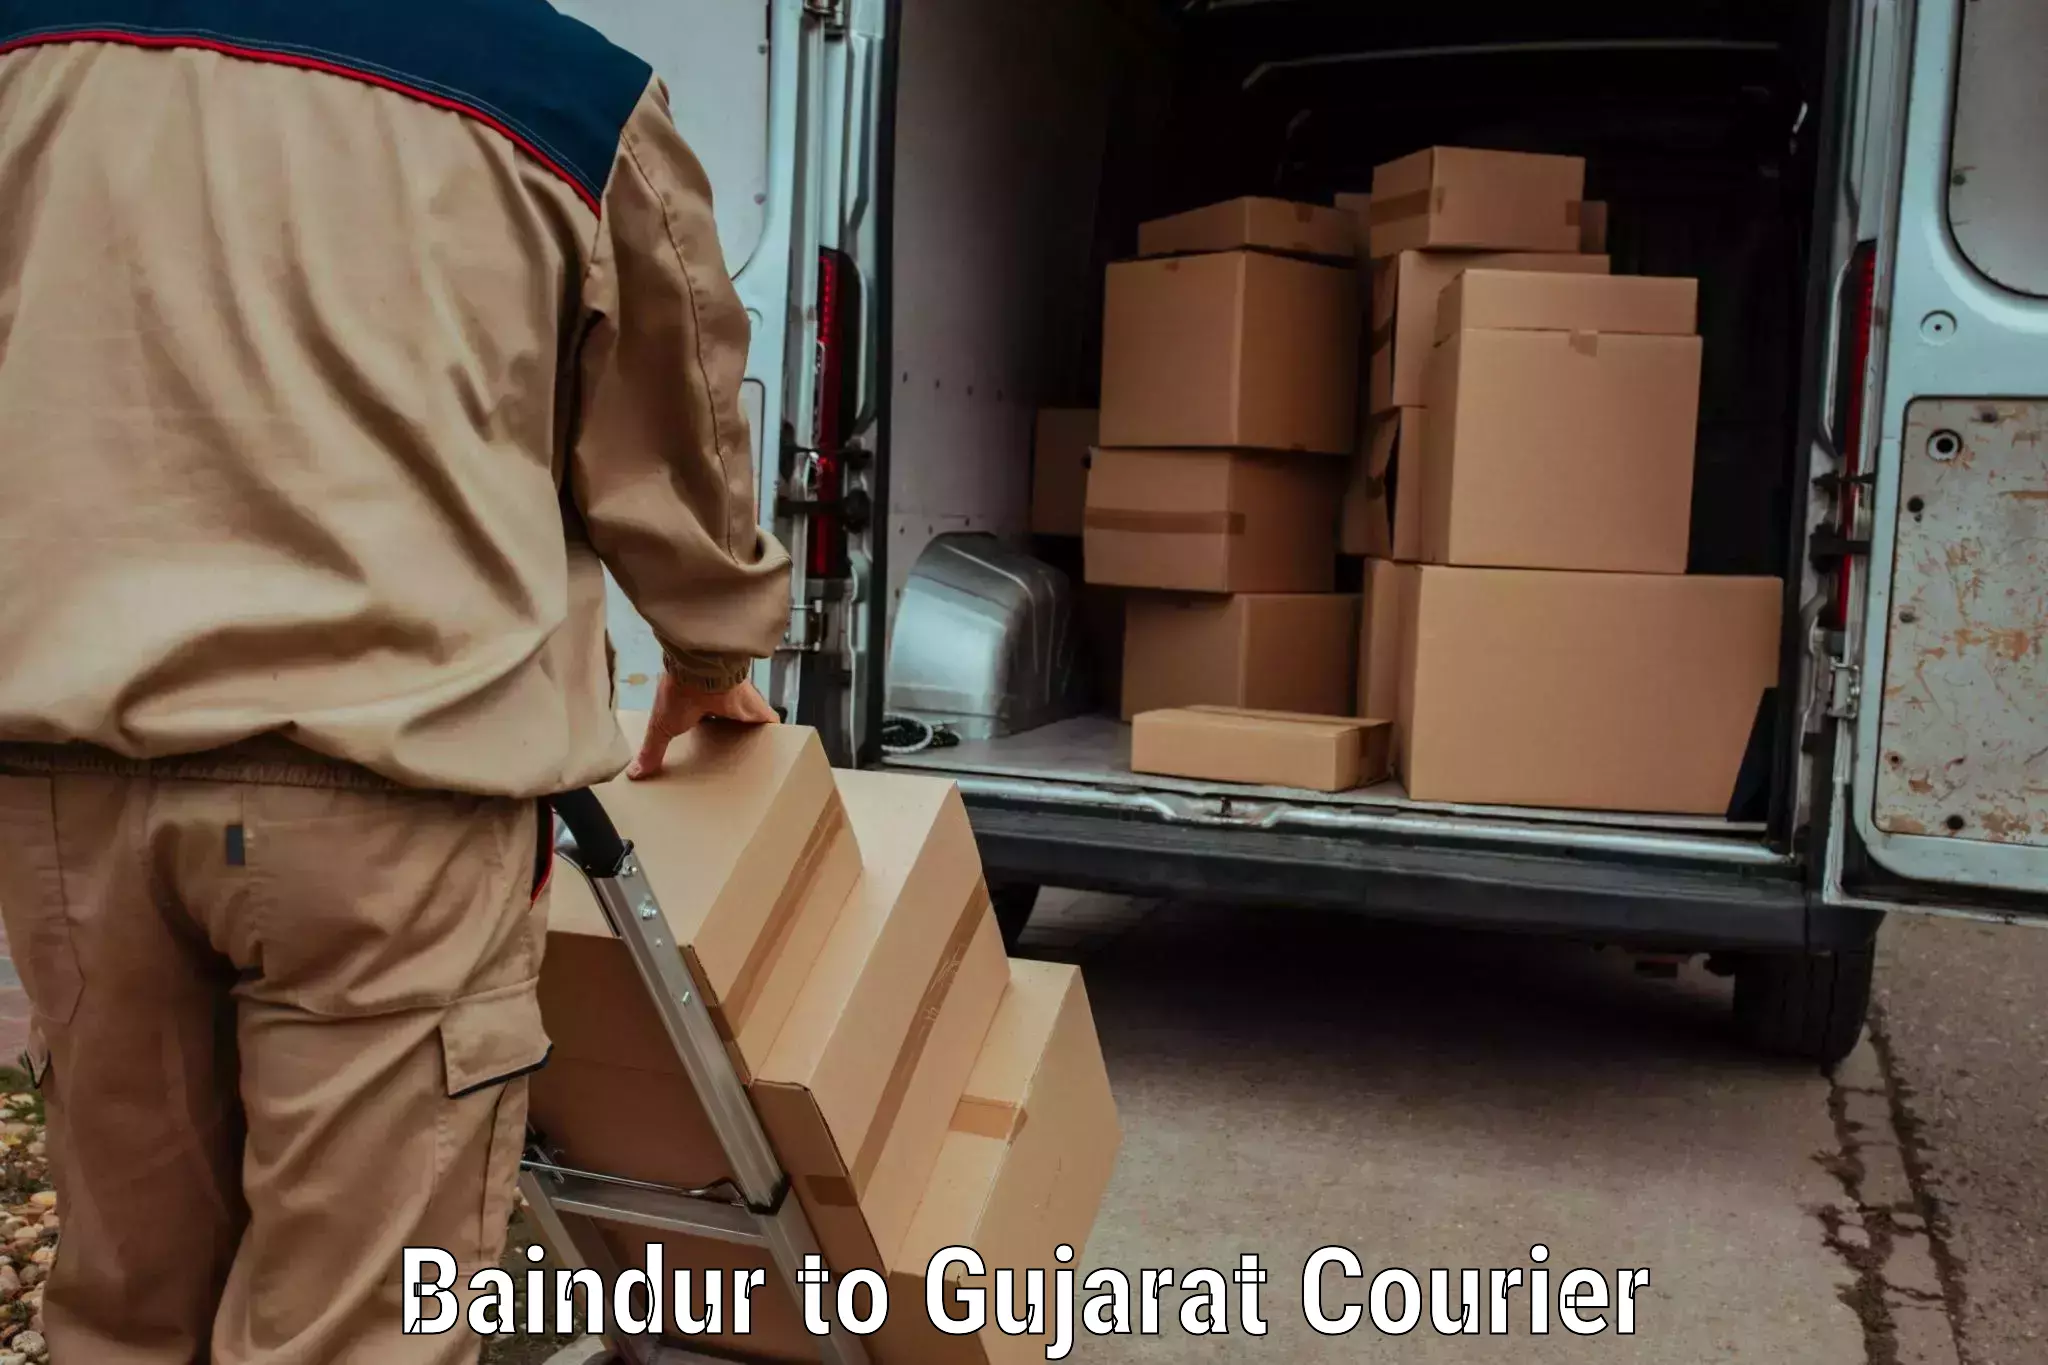 User-friendly courier app Baindur to Jamjodhpur